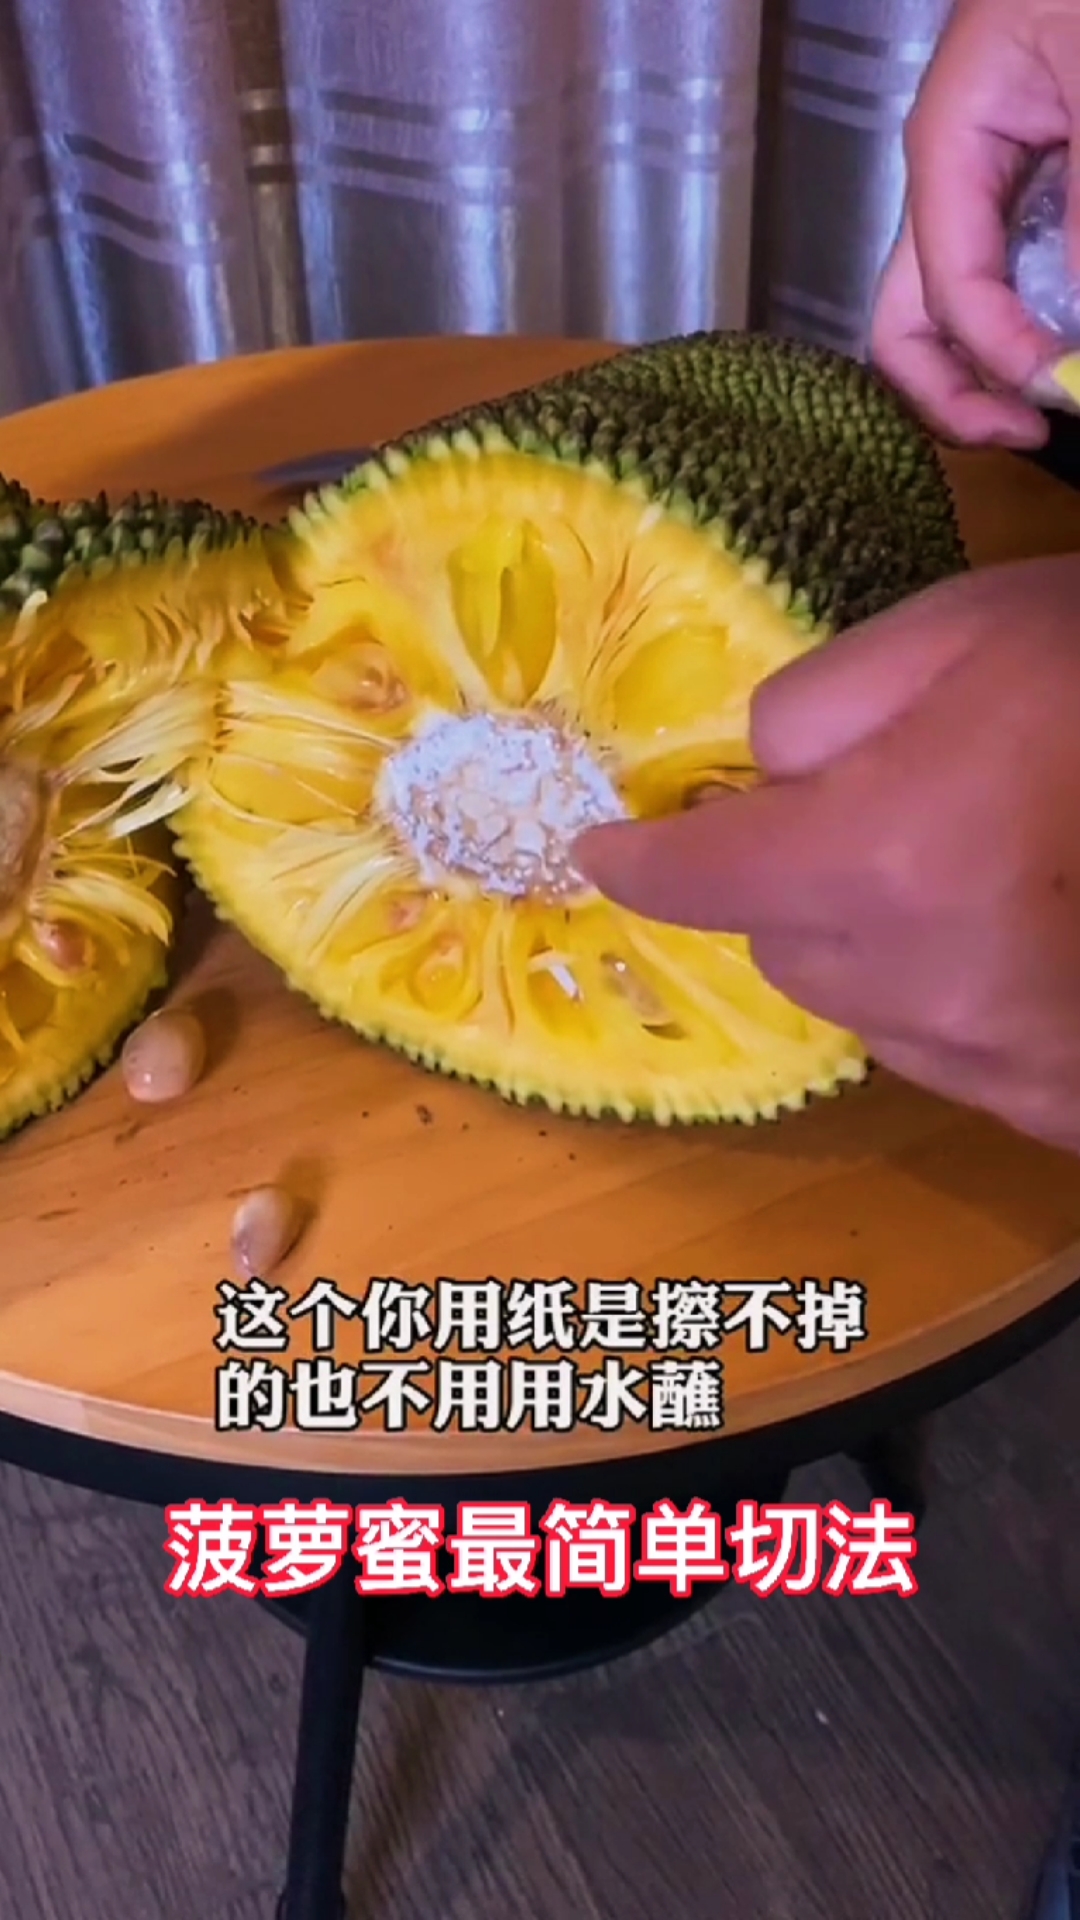 看完就知道切菠萝蜜就是这么简单